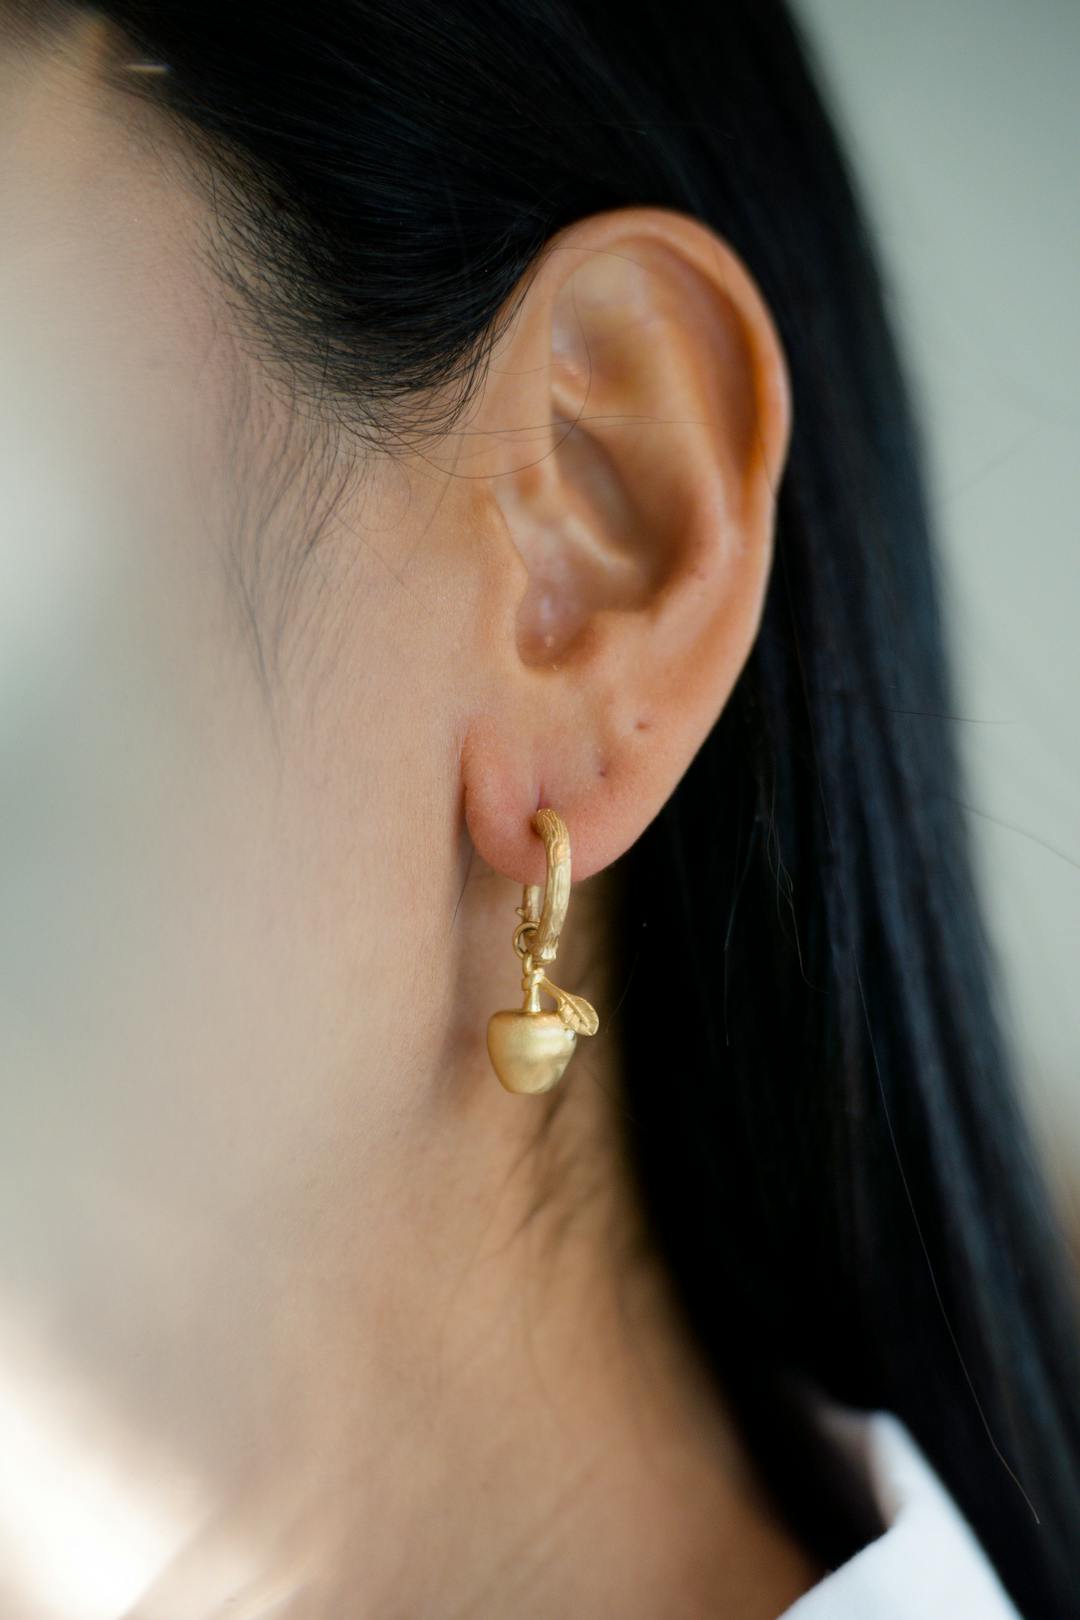 Golden apple earrings